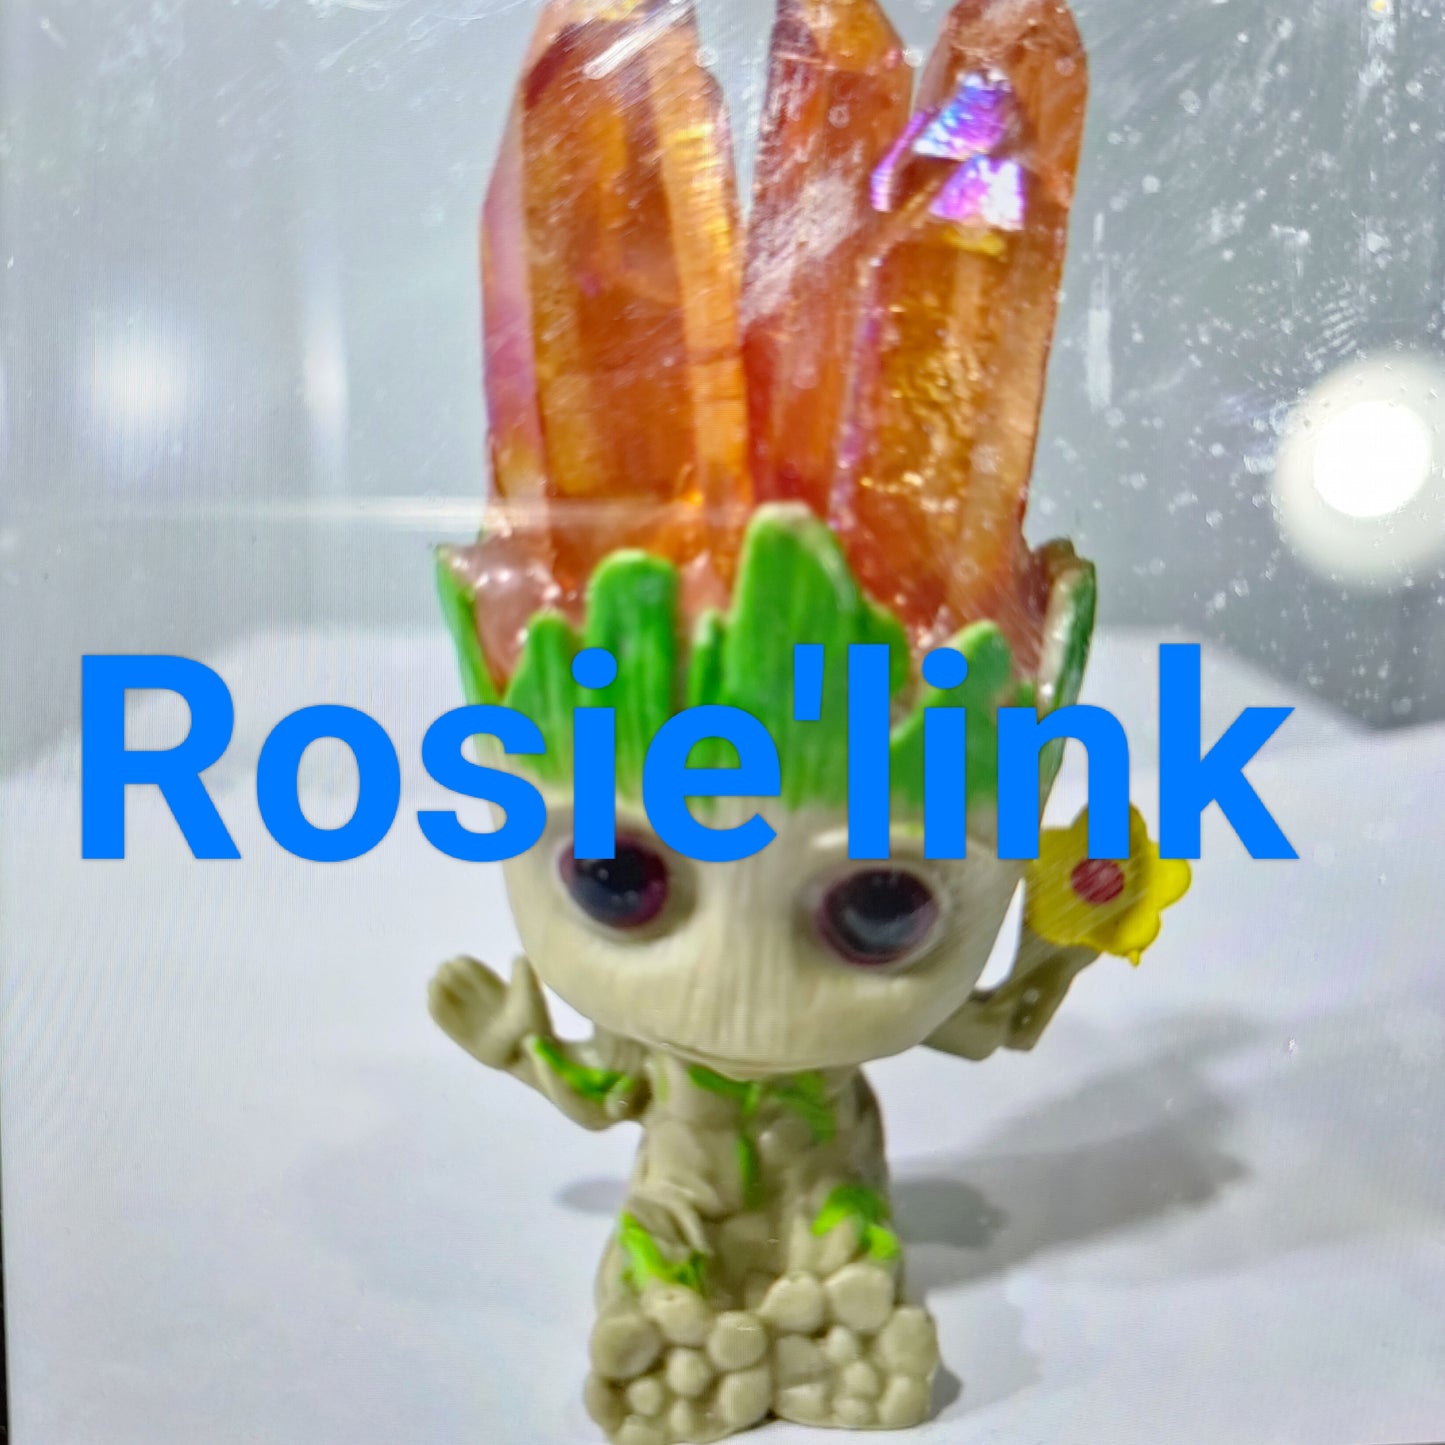 Rosie-deposit for rosie